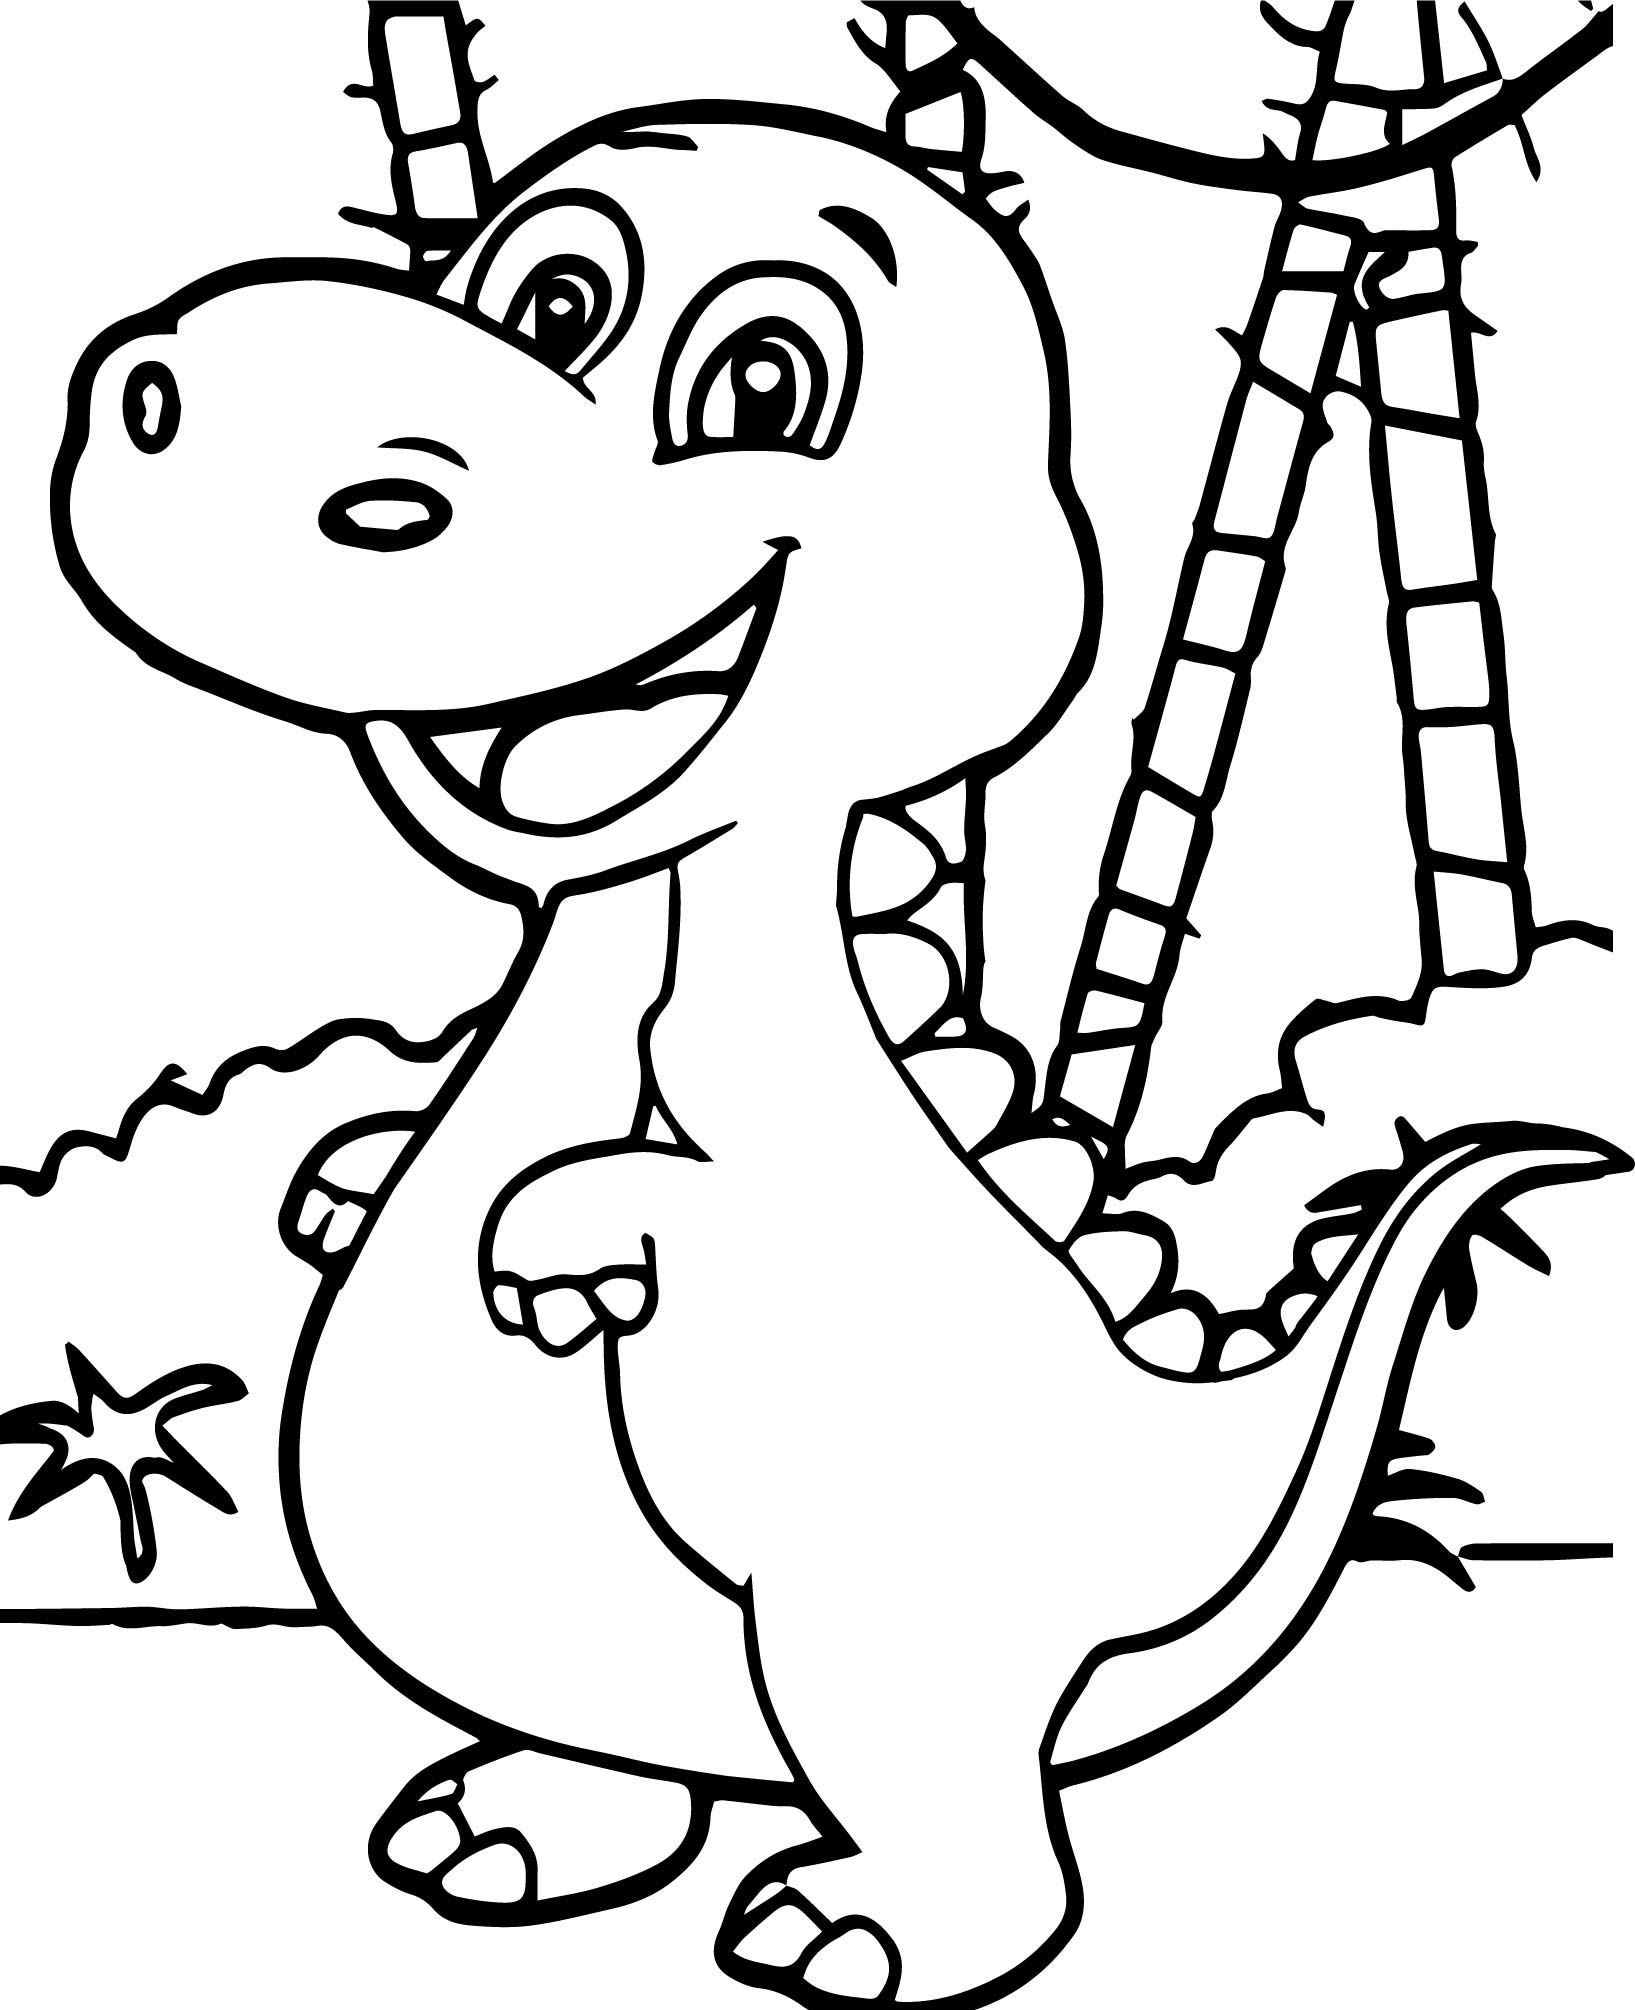 Динозавры для раскрашивания. Динозавры / раскраска. Динозавр раскраска для детей. Раскраска "Динозаврики". Динозавры для раскрашивания детям.